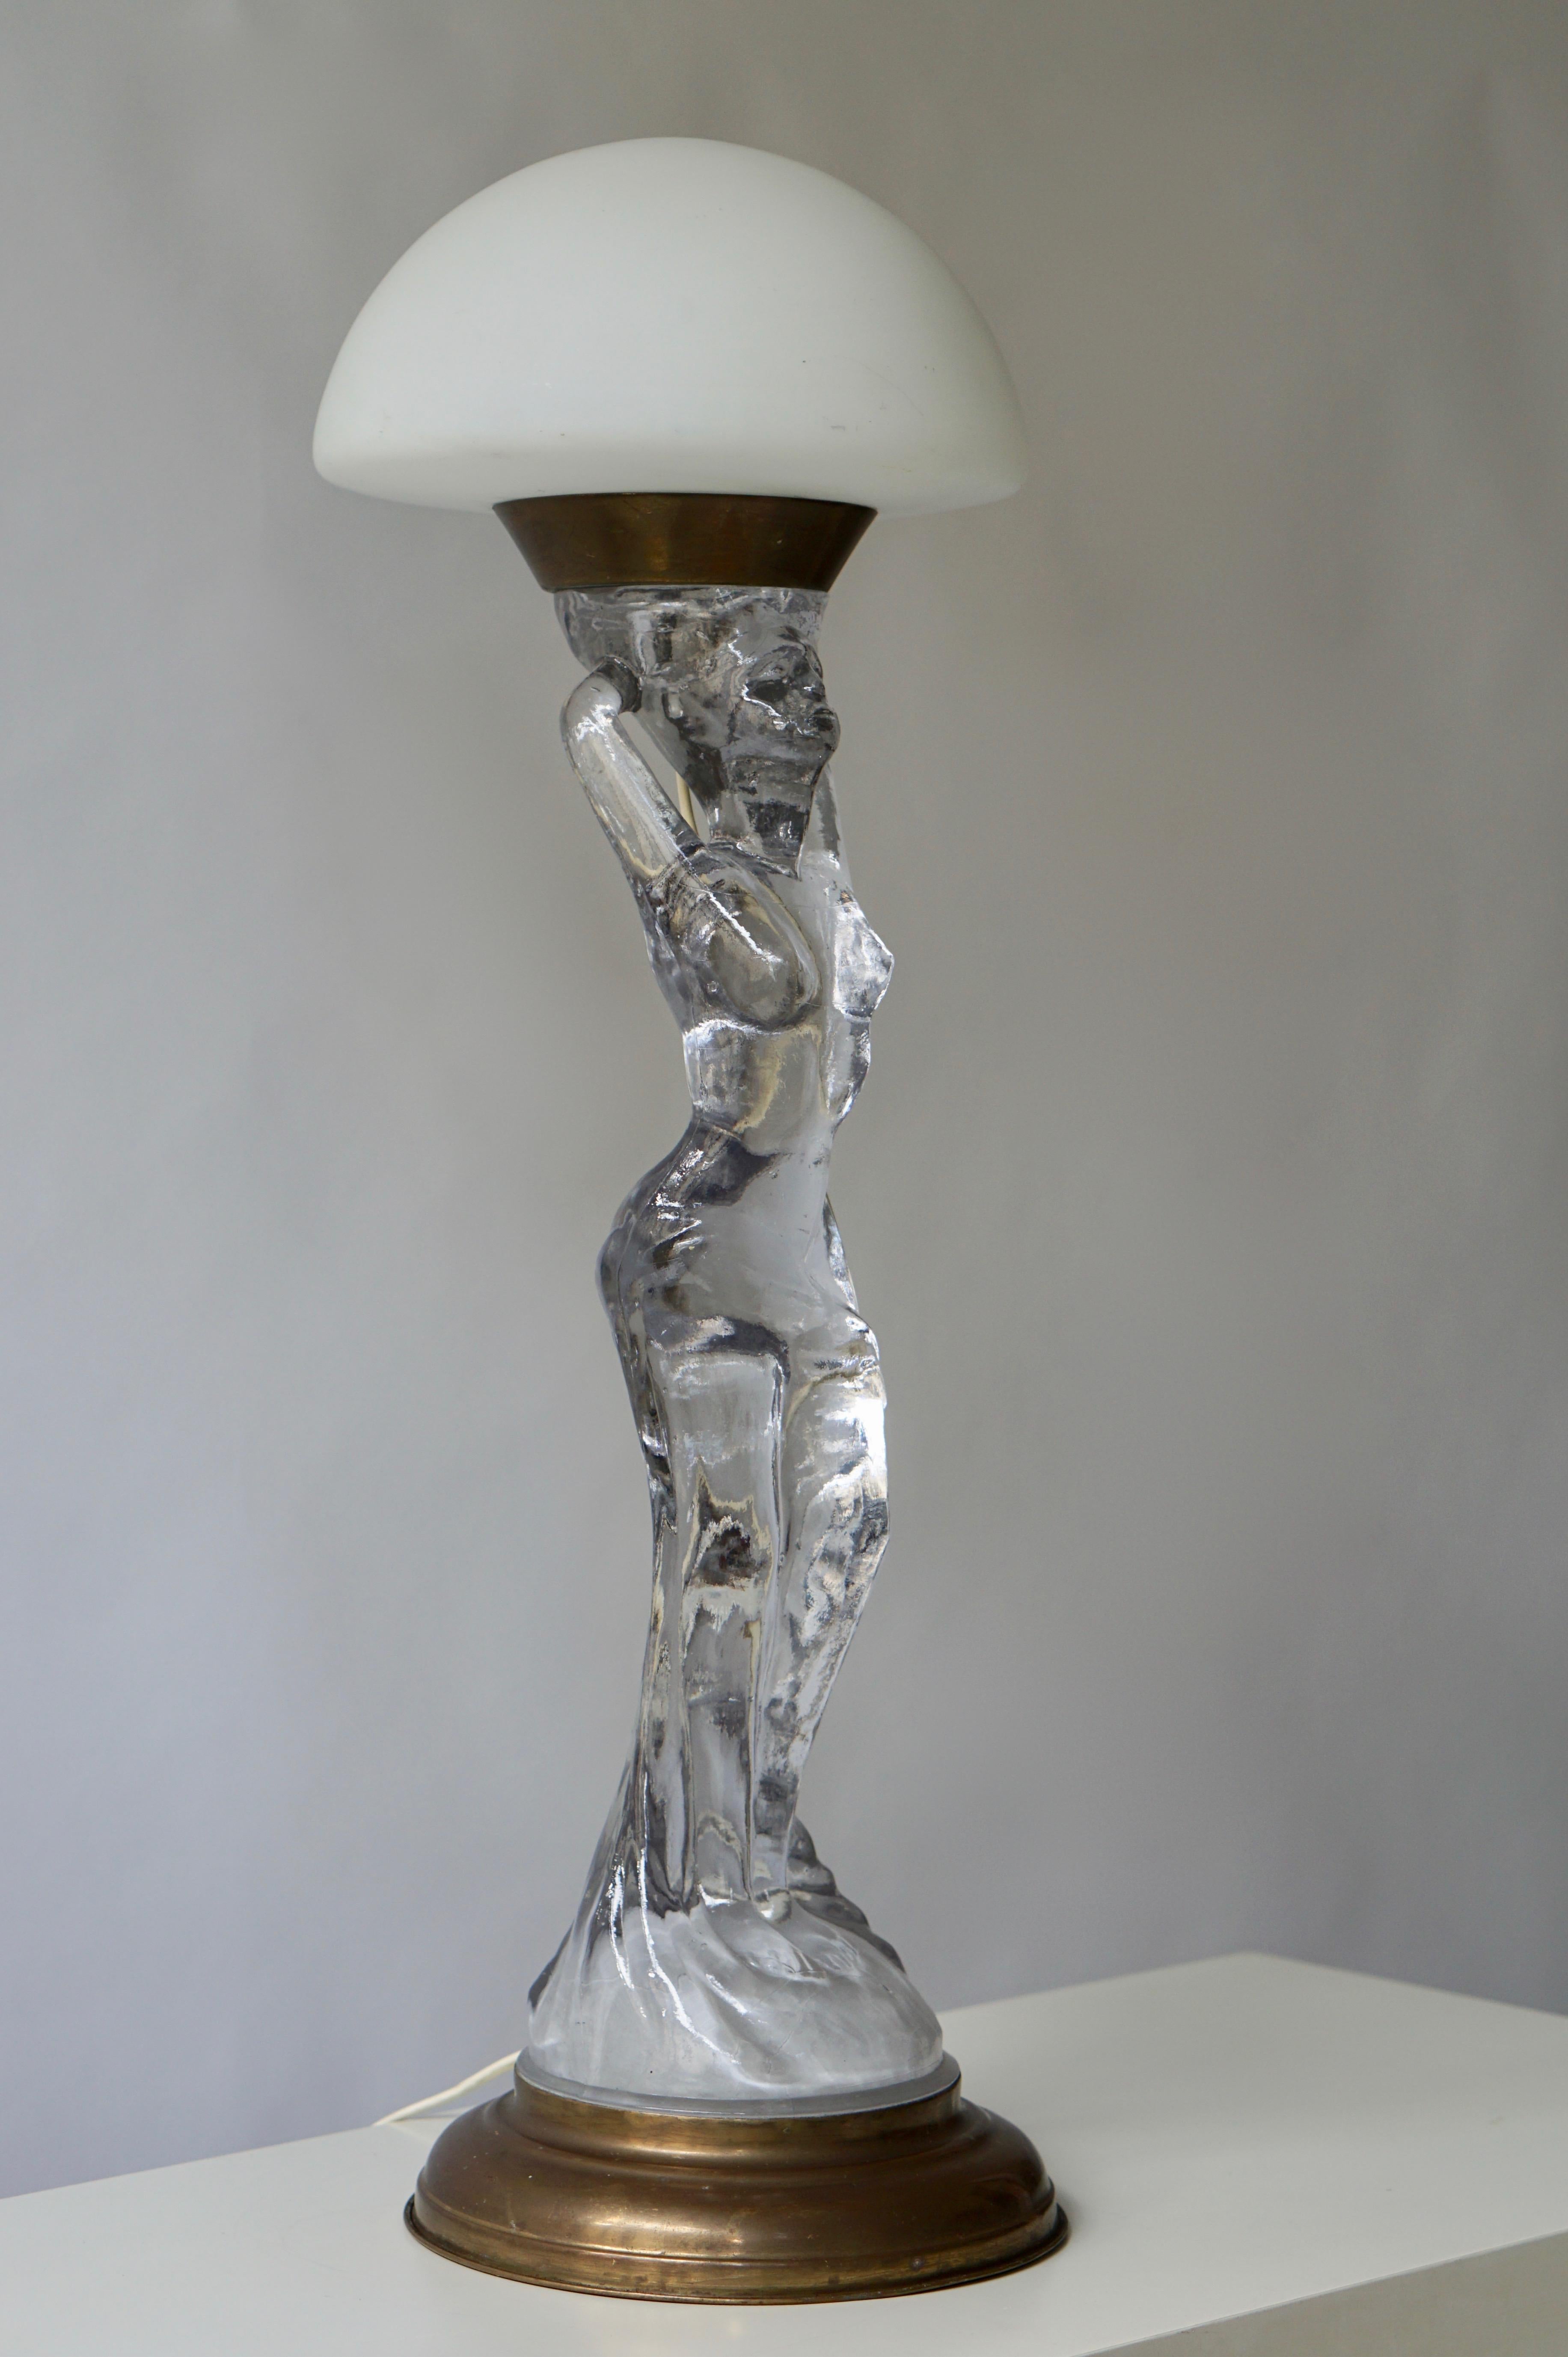 Wunderschöne nackte Tischlampe aus Glas und Messing.
Höhe 72 cm.
Durchmesser 24 cm.